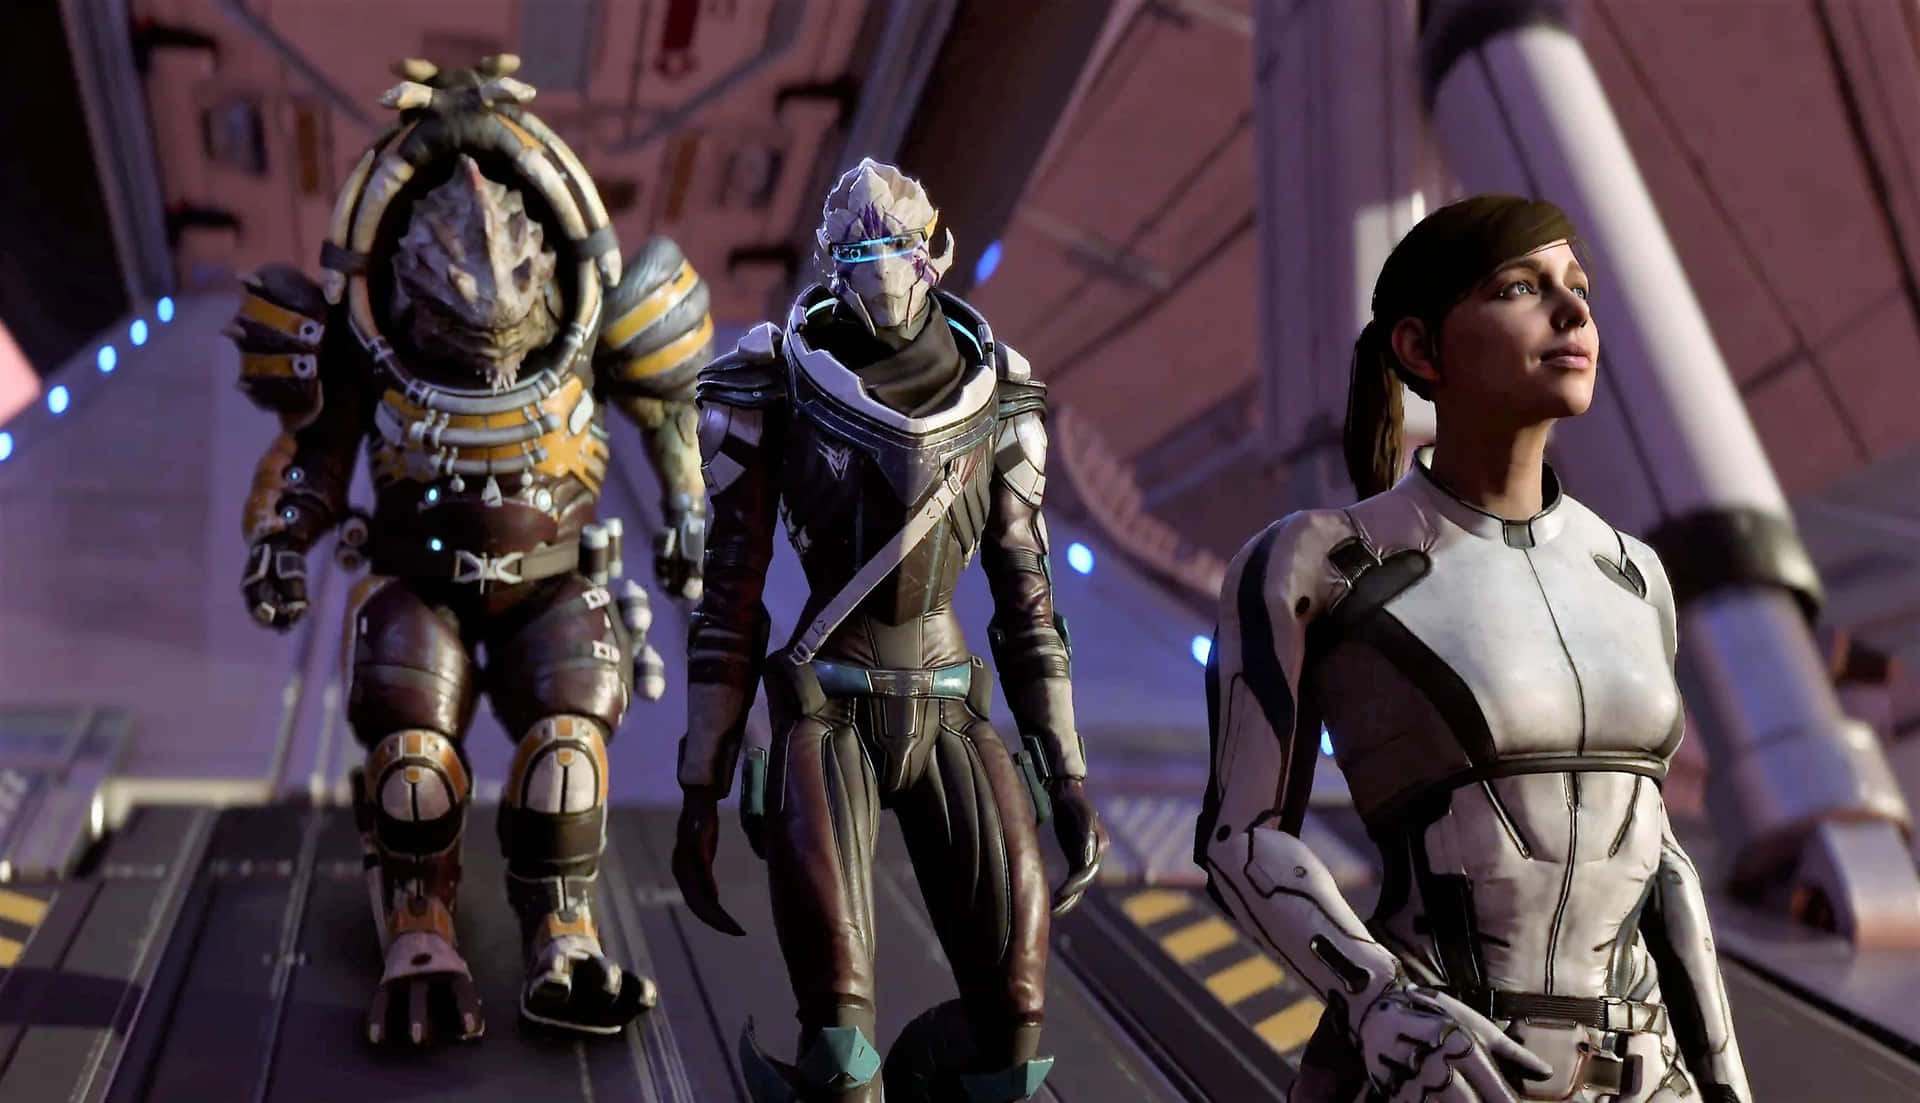 Personajesde Mass Effect En Acción. Fondo de pantalla